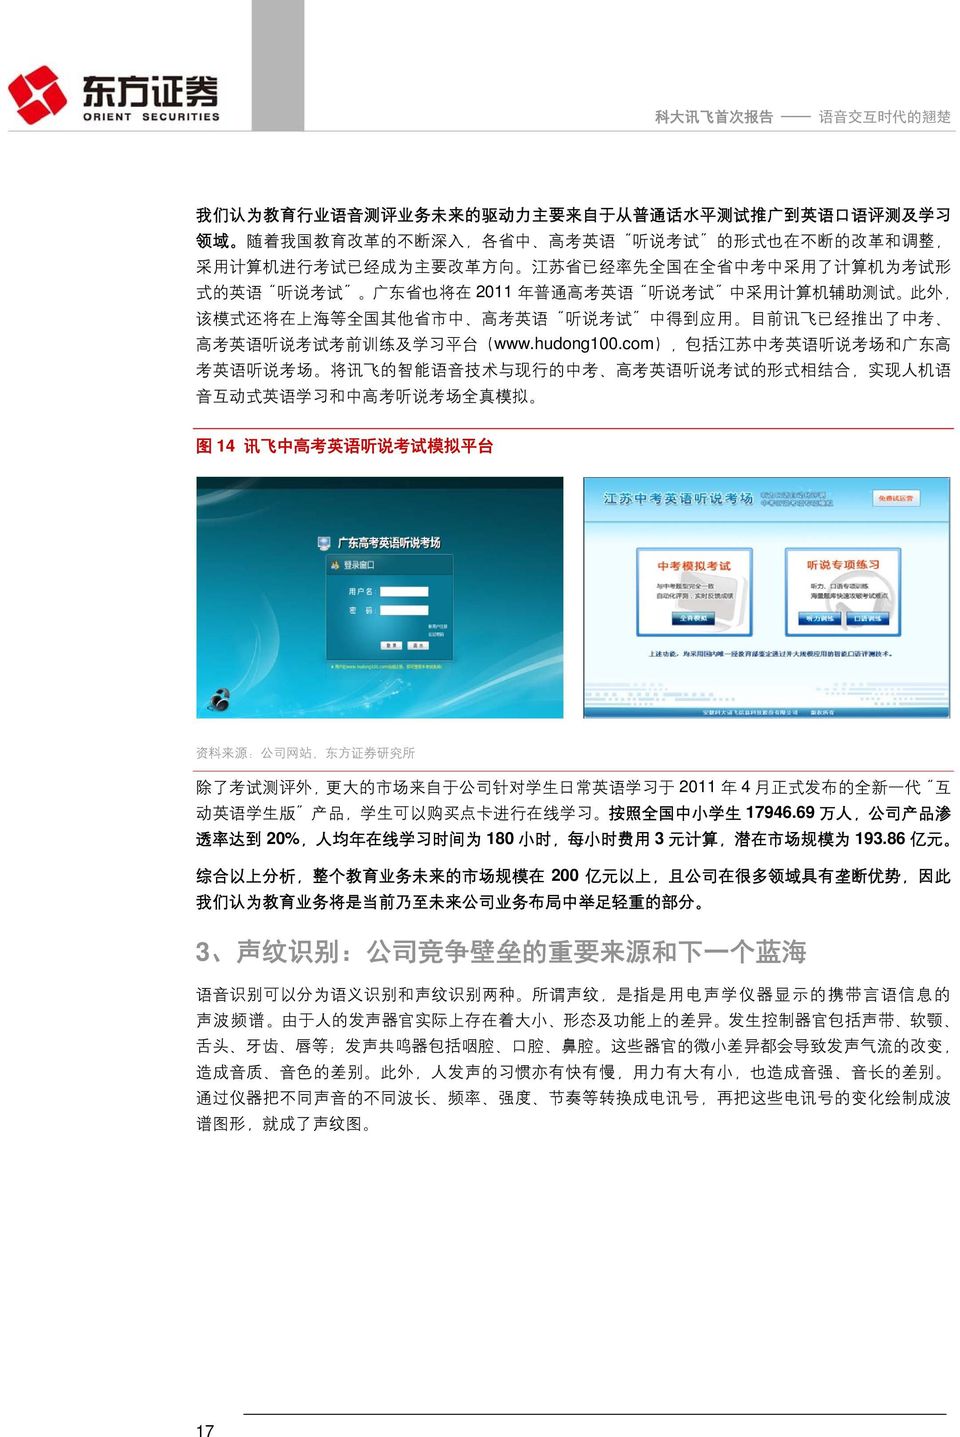 讯 飞 已 经 推 出 了 中 考 高 考 英 语 听 说 考 试 考 前 训 练 及 学 习 平 台 (www.hudong100.